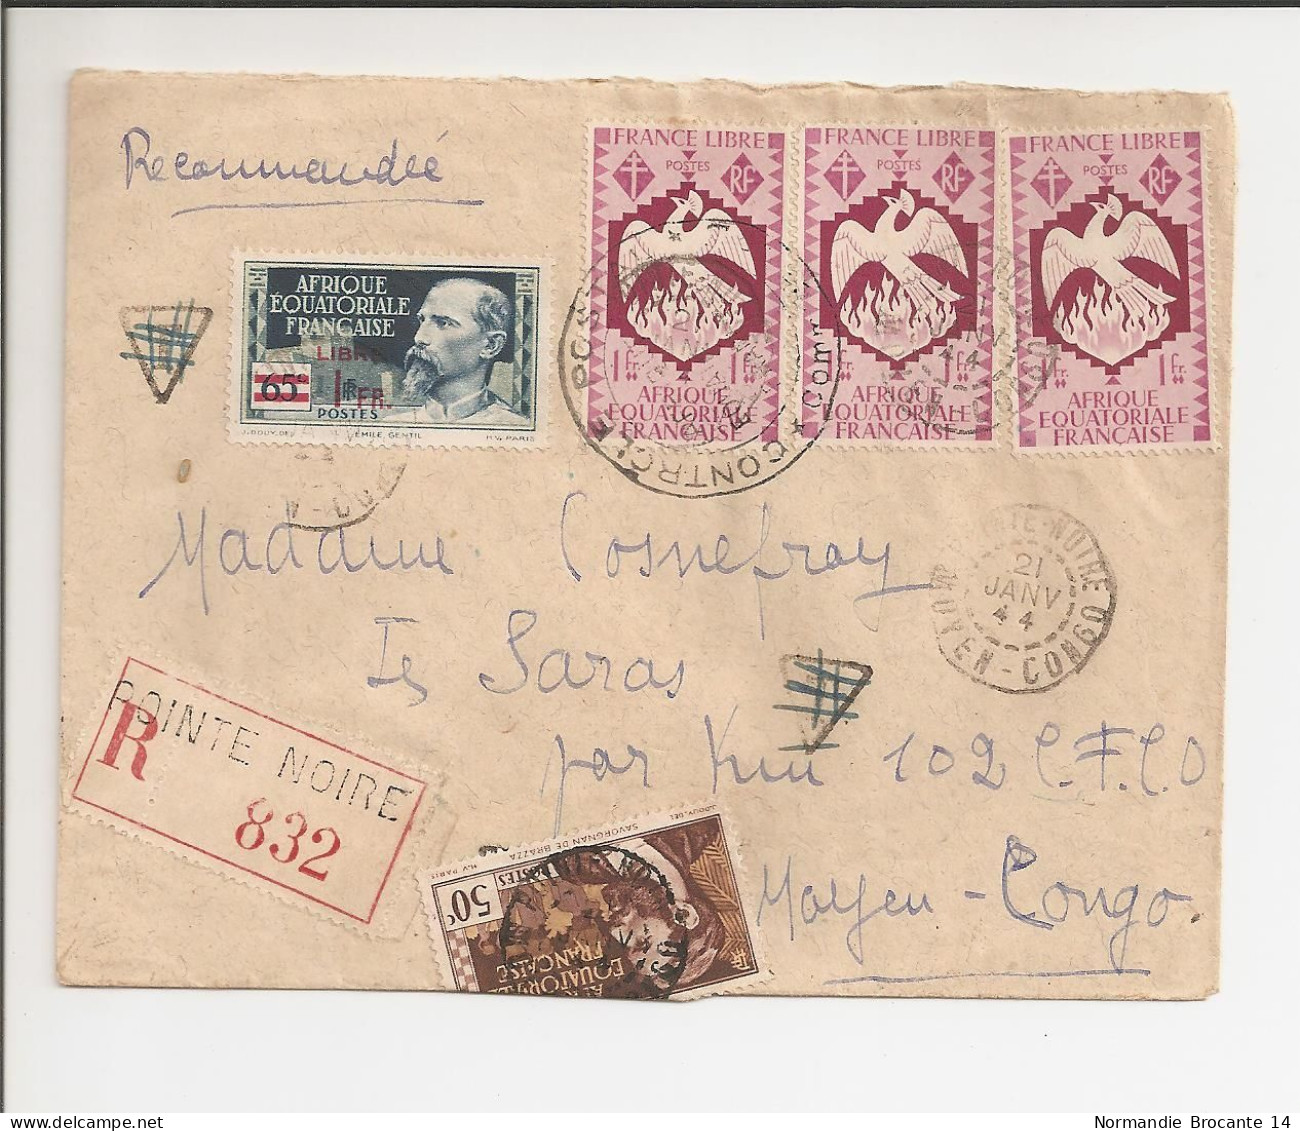 Lettre Recommandée AEF (Moyen Congo) Janvier 1944 - Timbre AEF France Libre - Brieven En Documenten